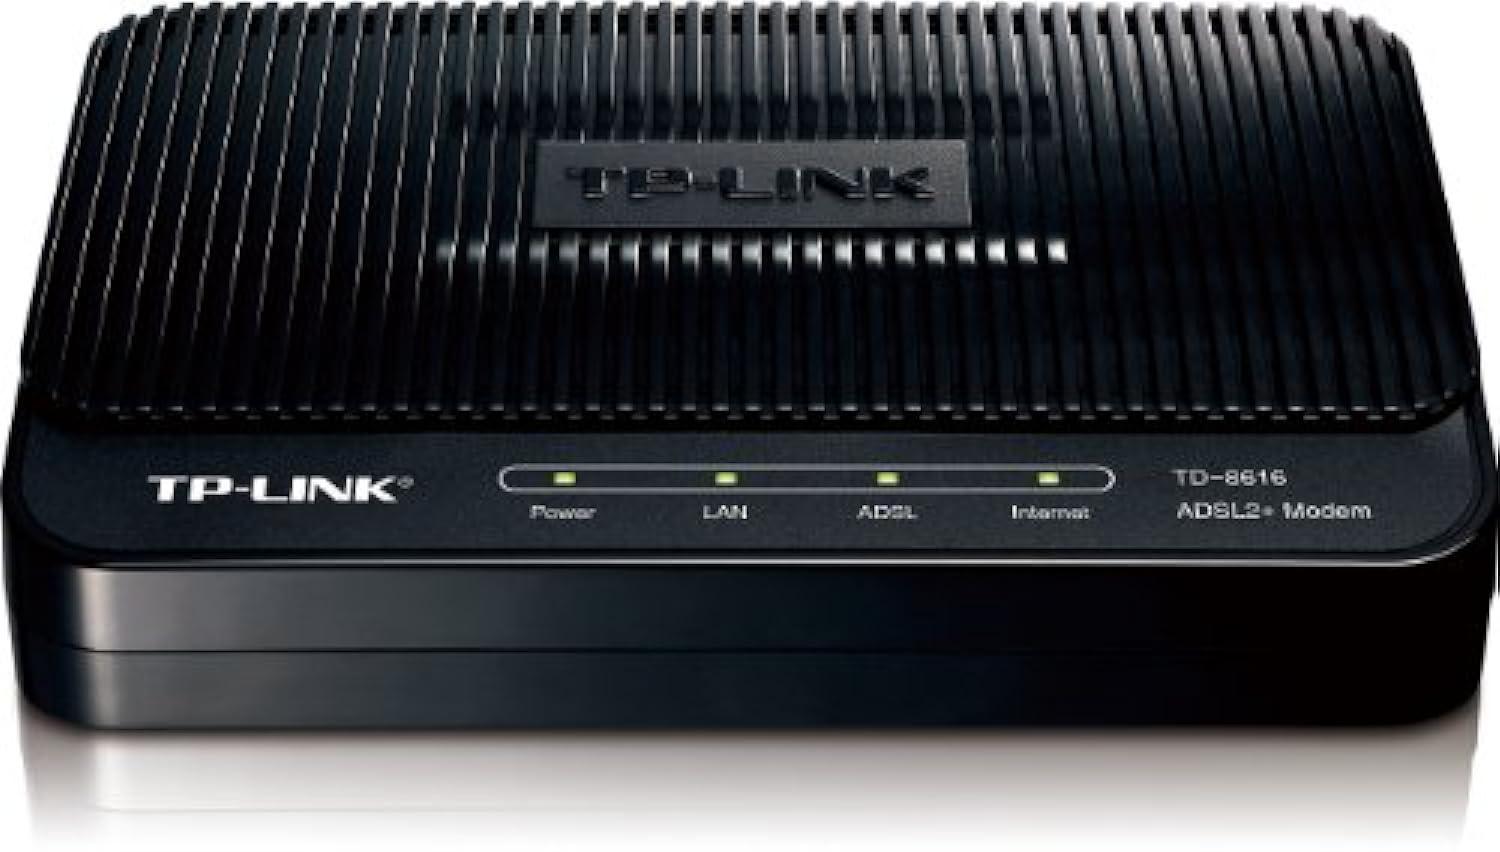 tp-link adsl2+ modem, up to 24mbps downstream bandwidth, 6kv lightning protection (td-8616)